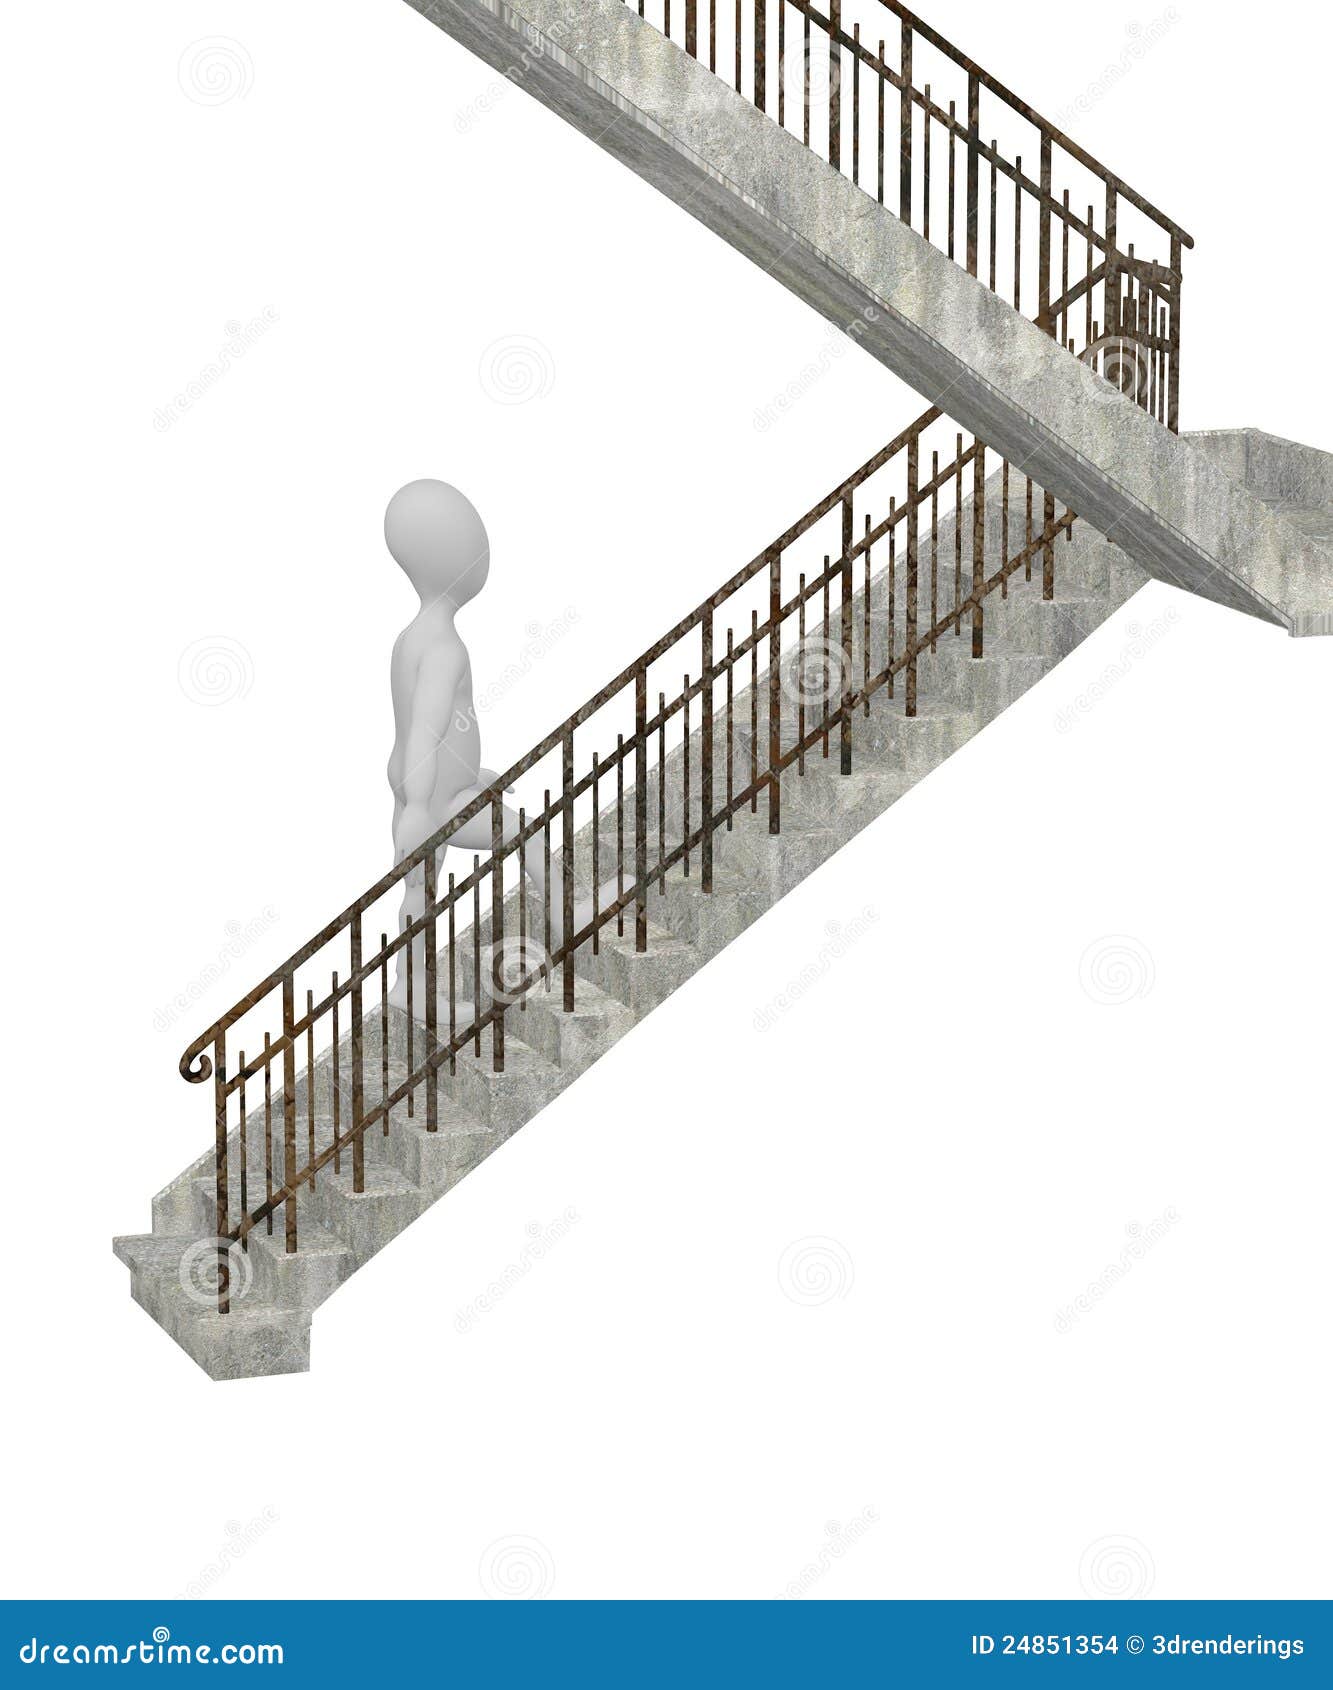 images stock le personnage de dessin anim marche sur des escaliers image